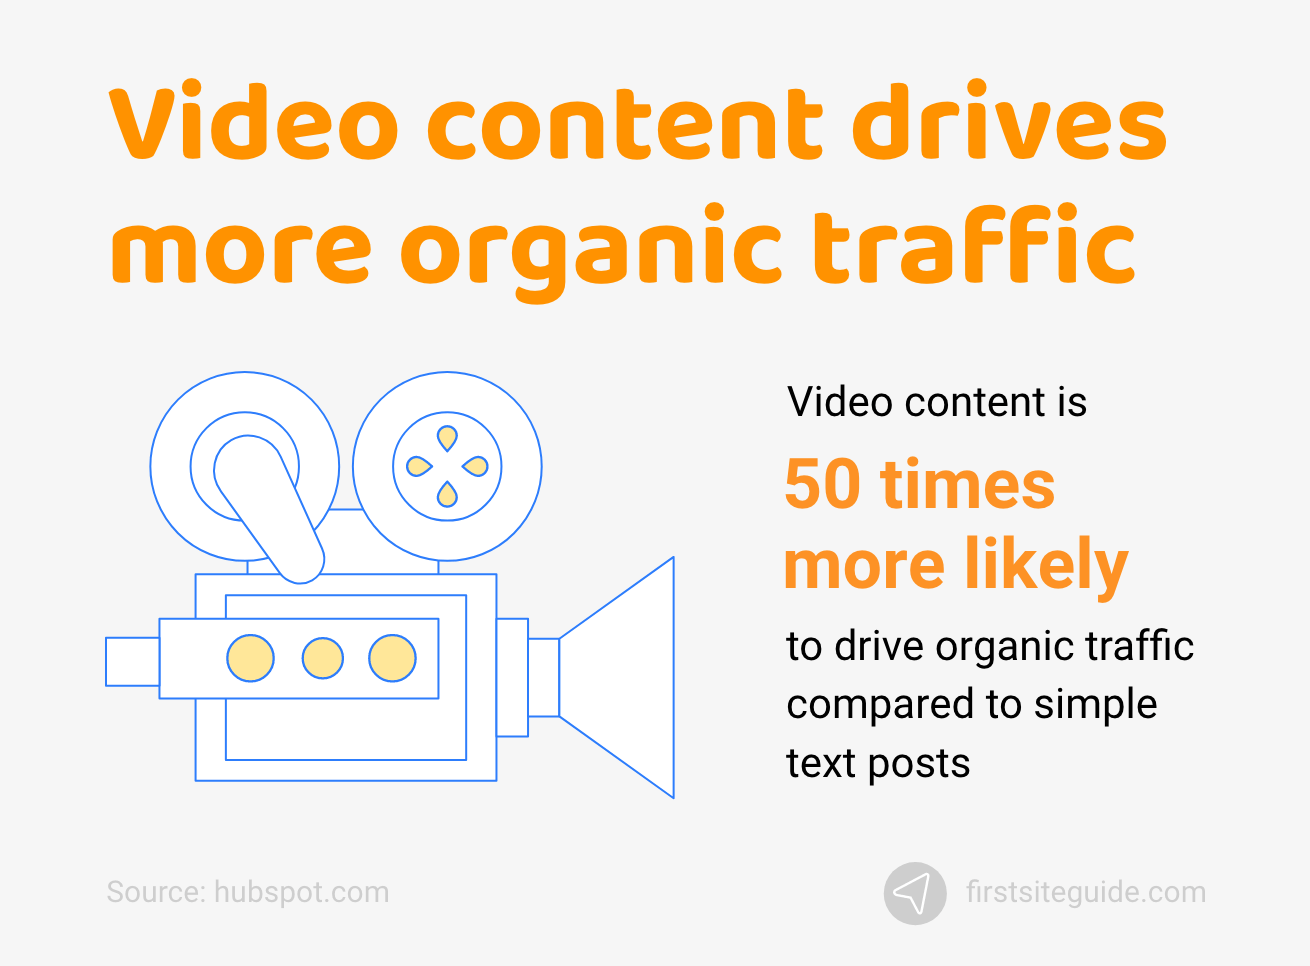 I contenuti video generano più traffico organico